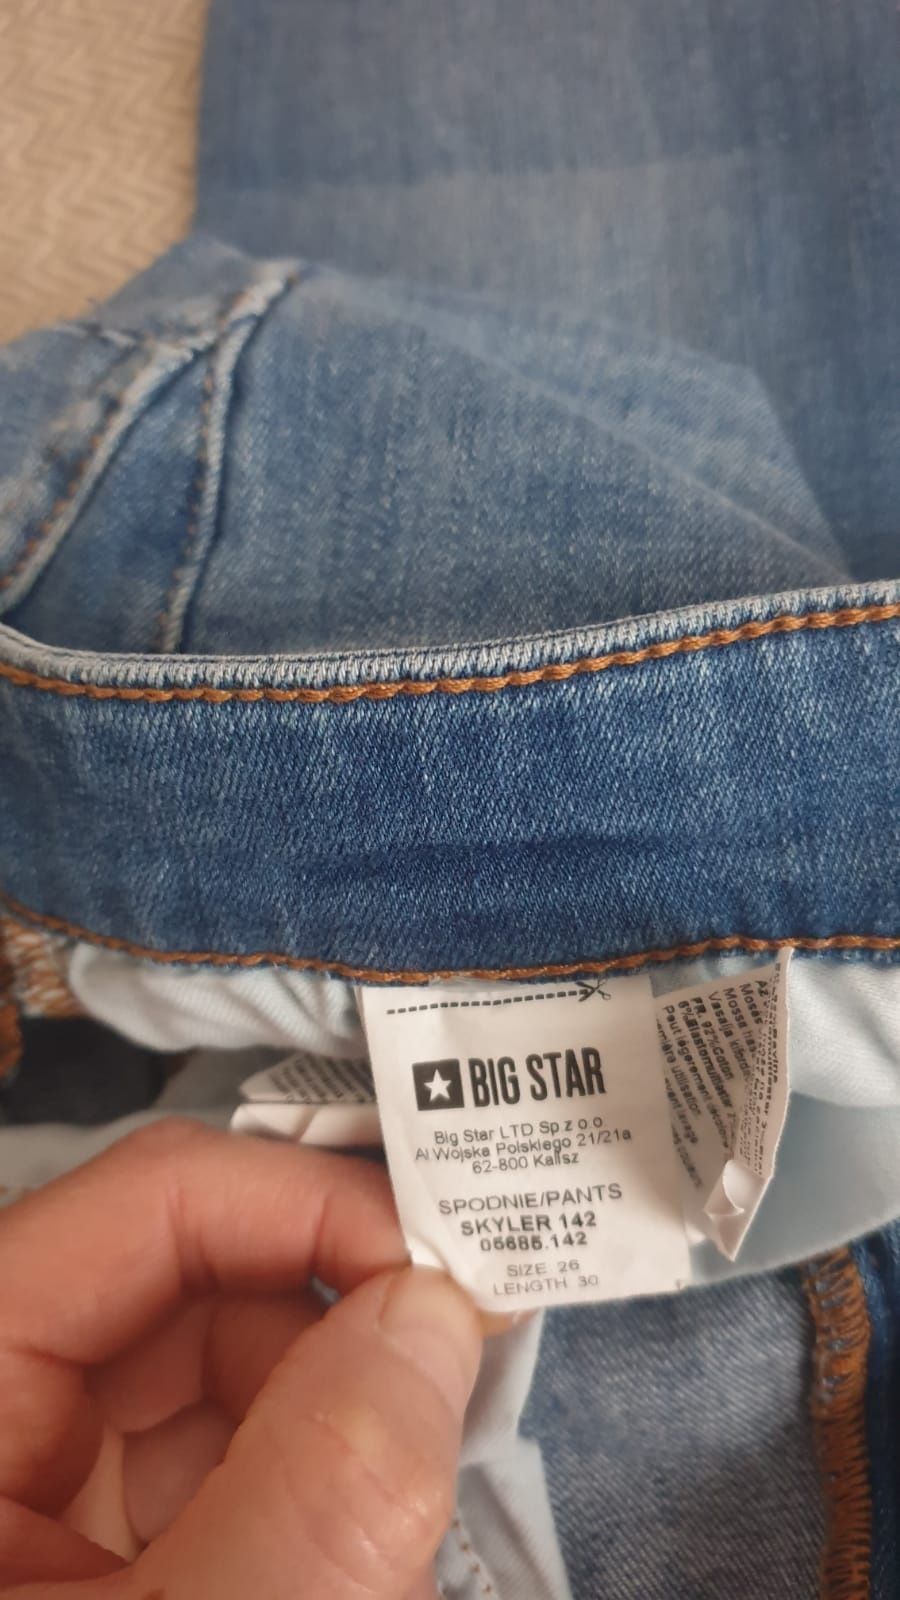 Big Star spodnie Jeans